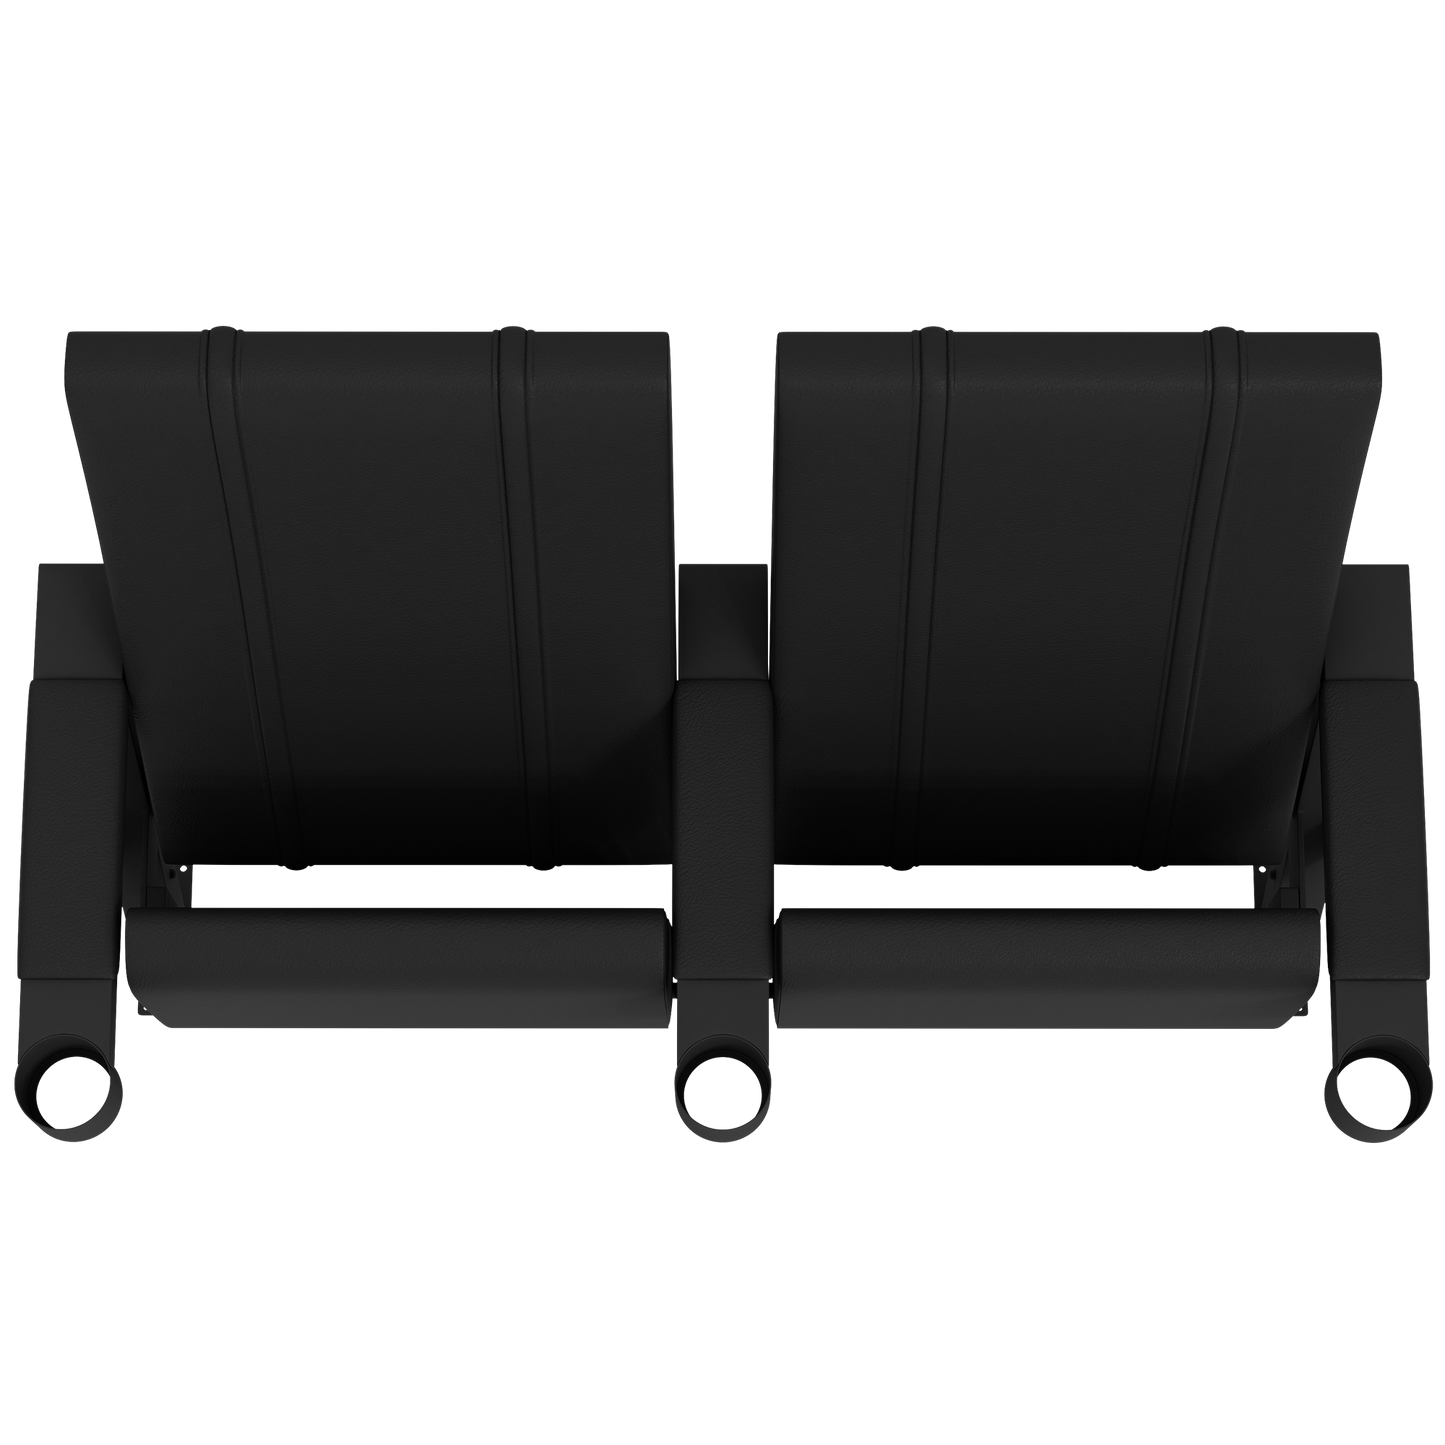 SuiteMax 3.5 VIP Seats with Dallas Cowboys Primary Logo